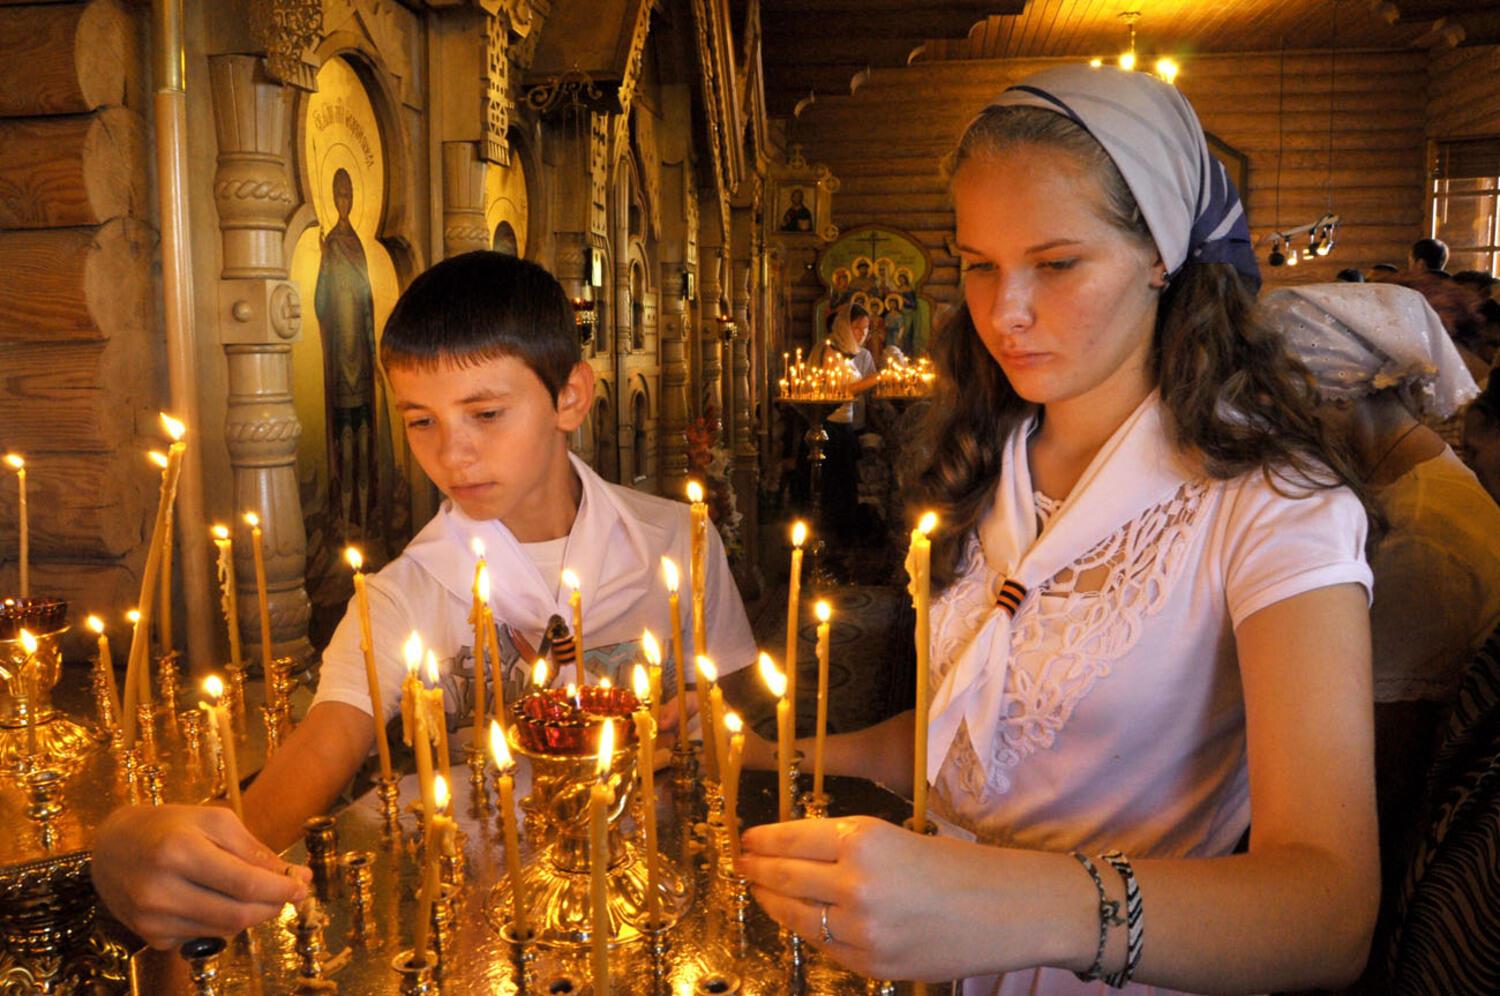 Кому молятся православные